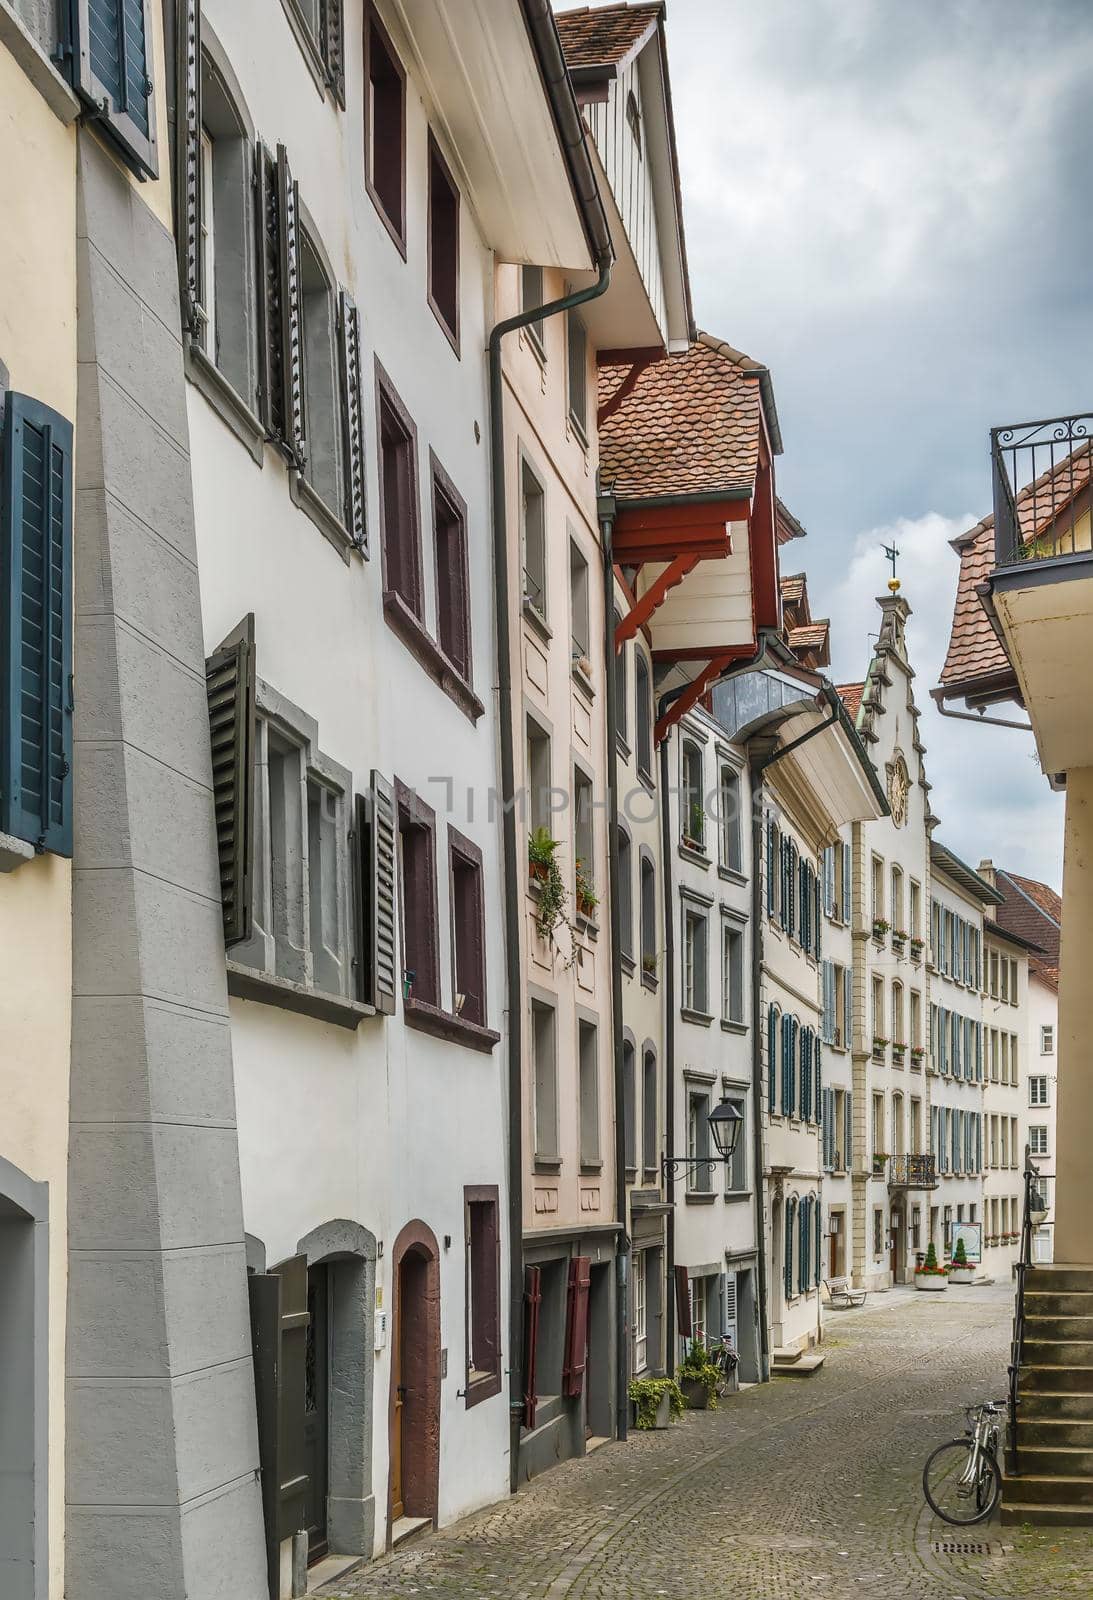 Street in Aarau, Switzerland by borisb17